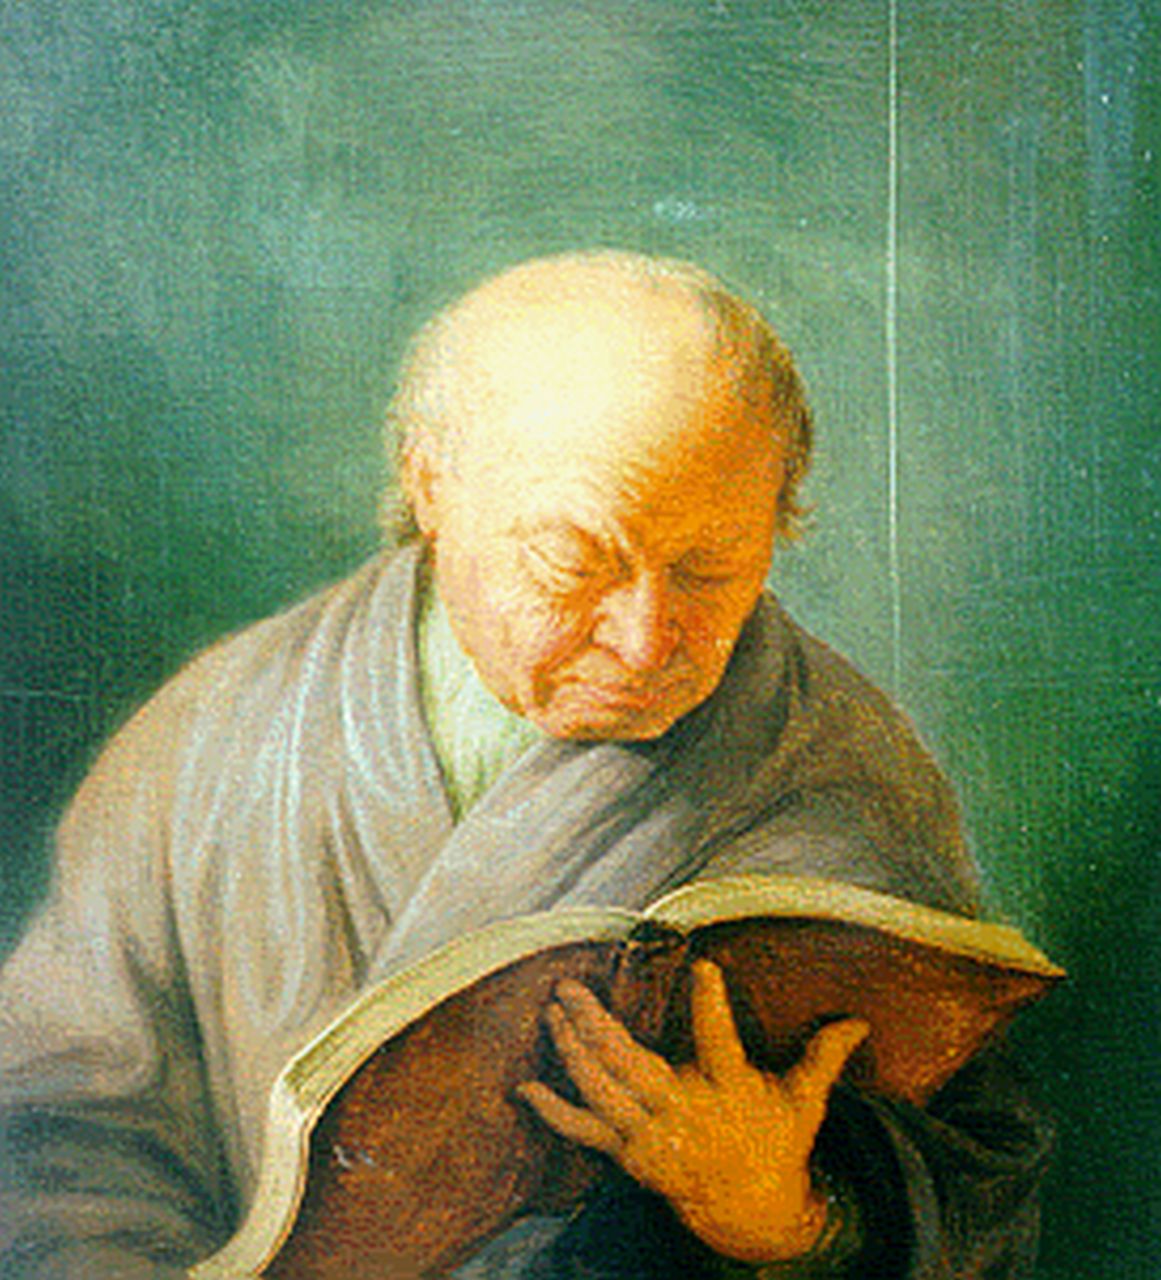 Mieris de Jonge F. van | Frans van Mieris de Jonge, Oude man met boek, olieverf op paneel 18,2 x 16,8 cm, gesigneerd verso en gedateerd 1740